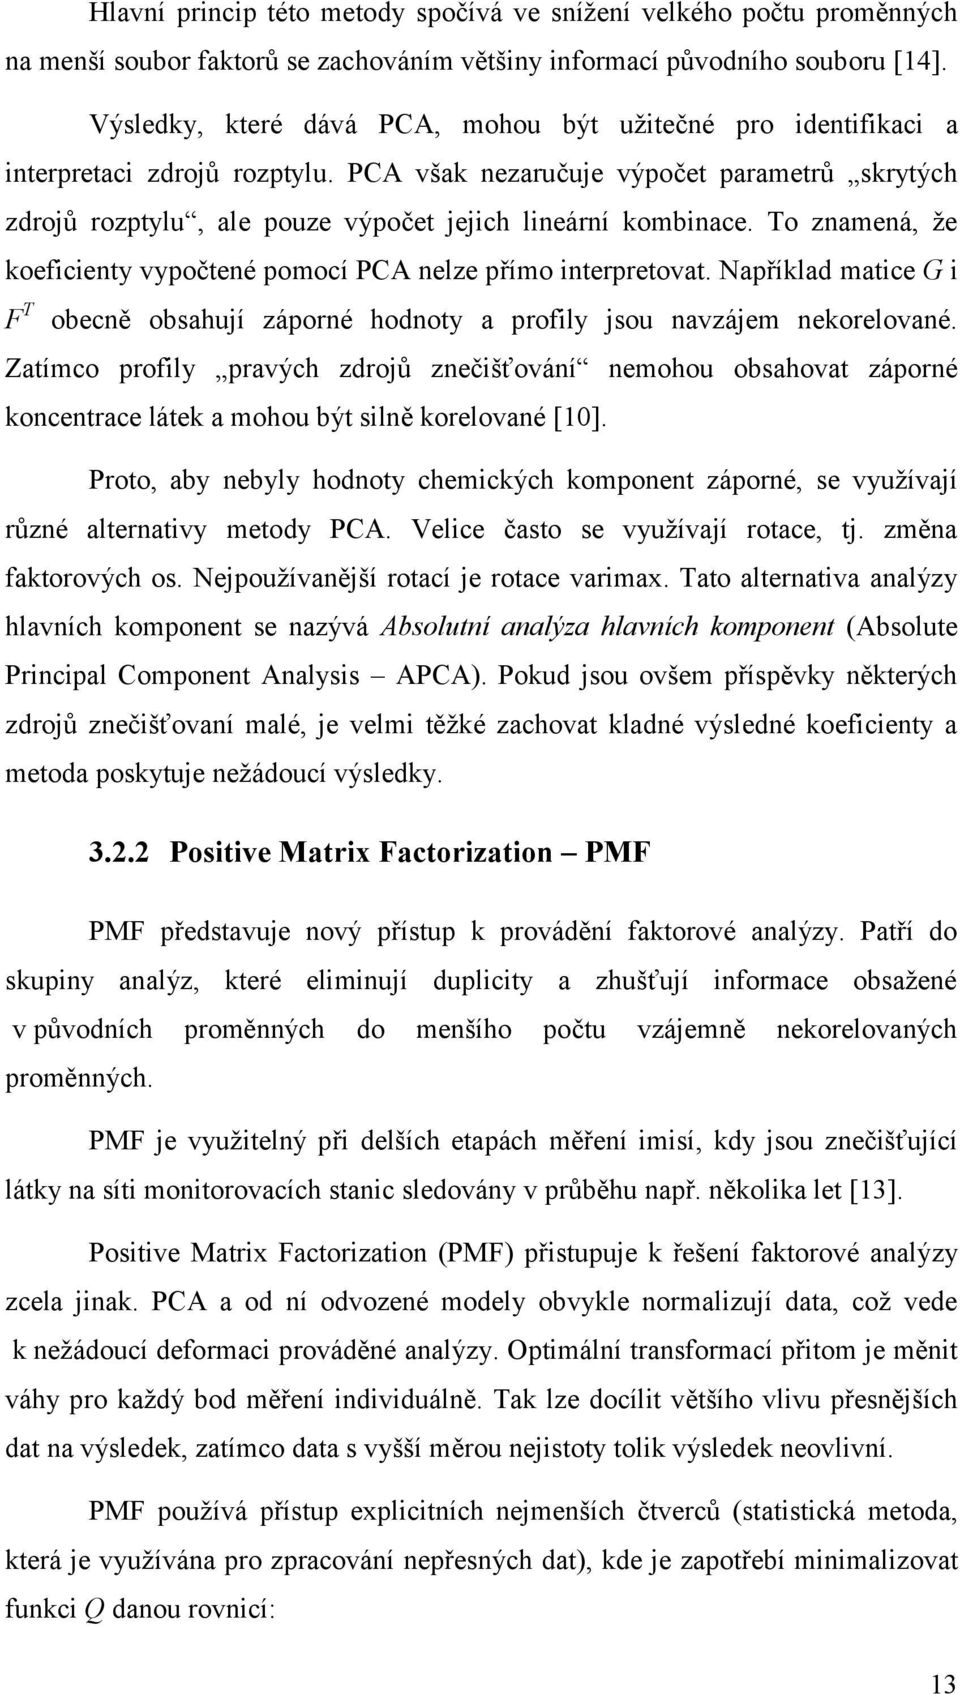 PCA však nezaručuje výpočet parametrů skrytých zdrojů rozptylu, ale pouze výpočet jejich lineární kombinace. To znamená, ţe koeficienty vypočtené pomocí PCA nelze přímo interpretovat.